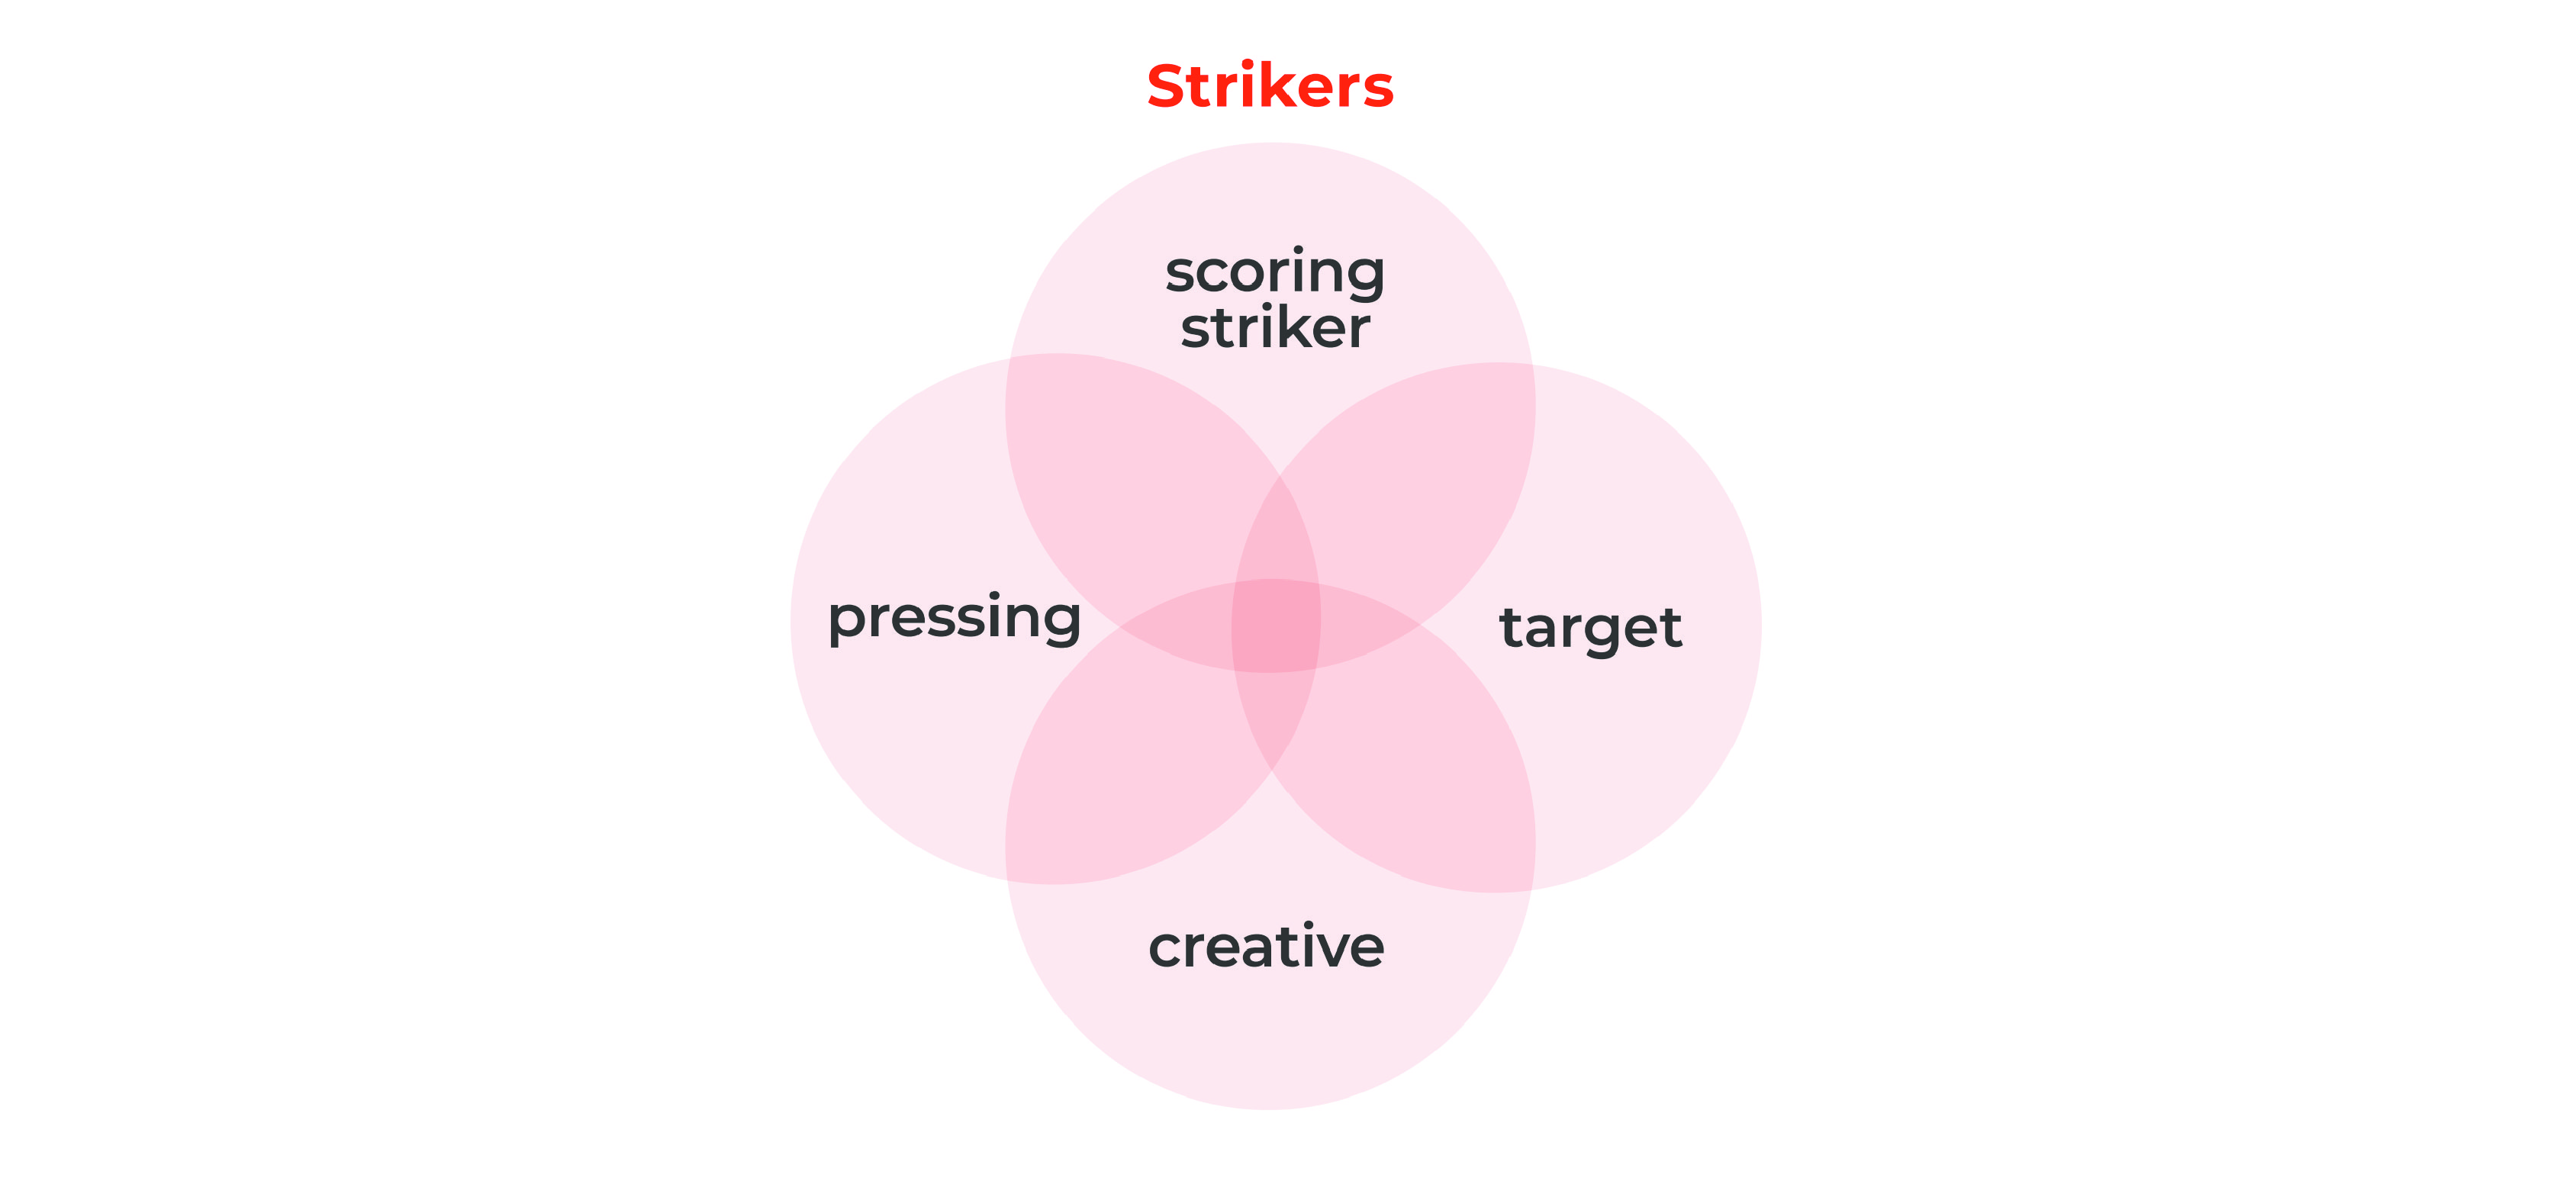 striker types